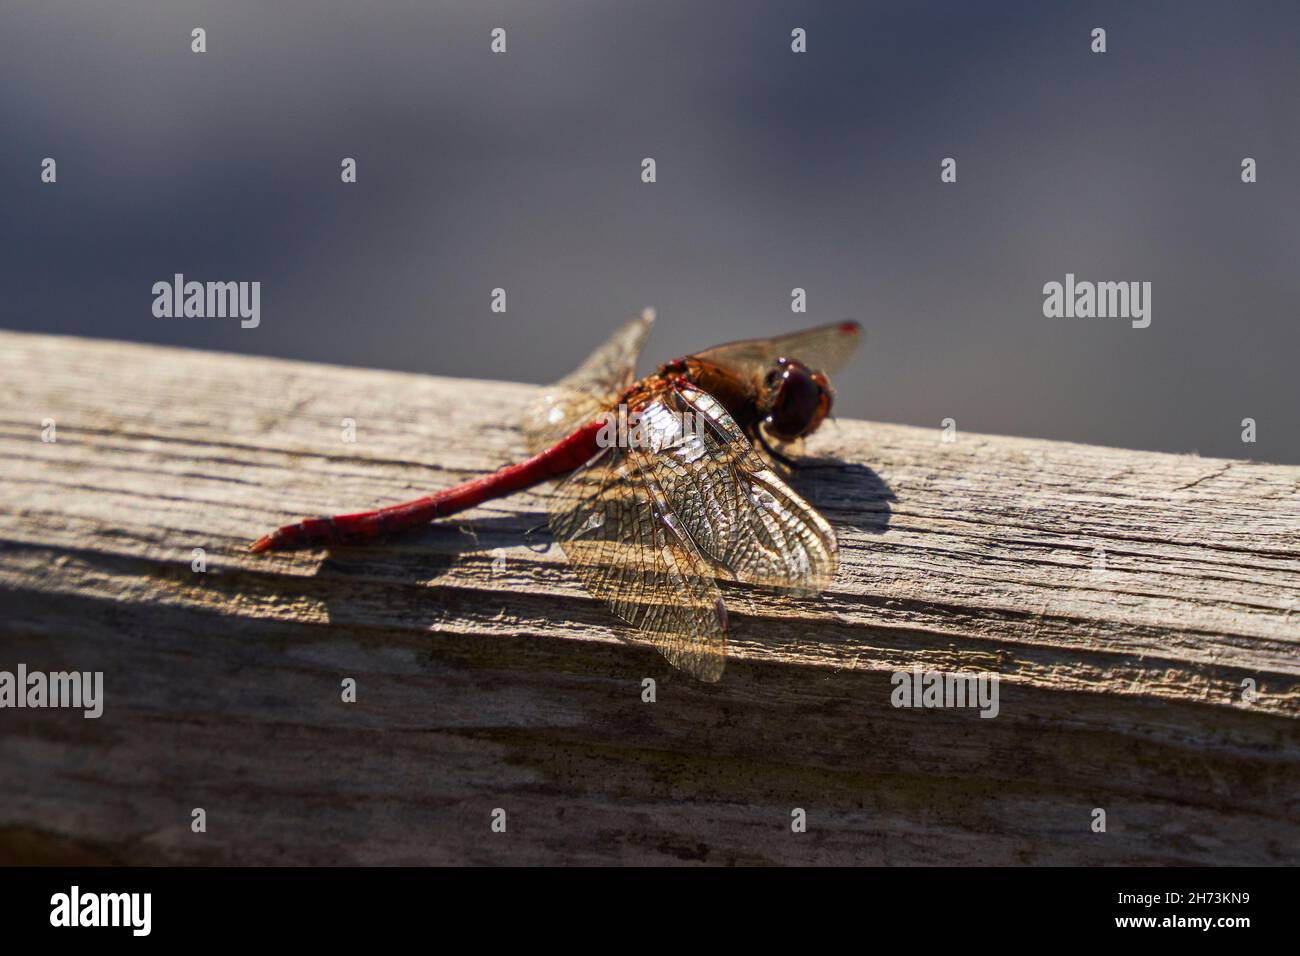 Eine Libellulidae, ein roter männlicher Sympetrum sanguineum oder eine ruddige, flauschige Libelle auf dem Hintergrund eines alten Holzes Stockfoto